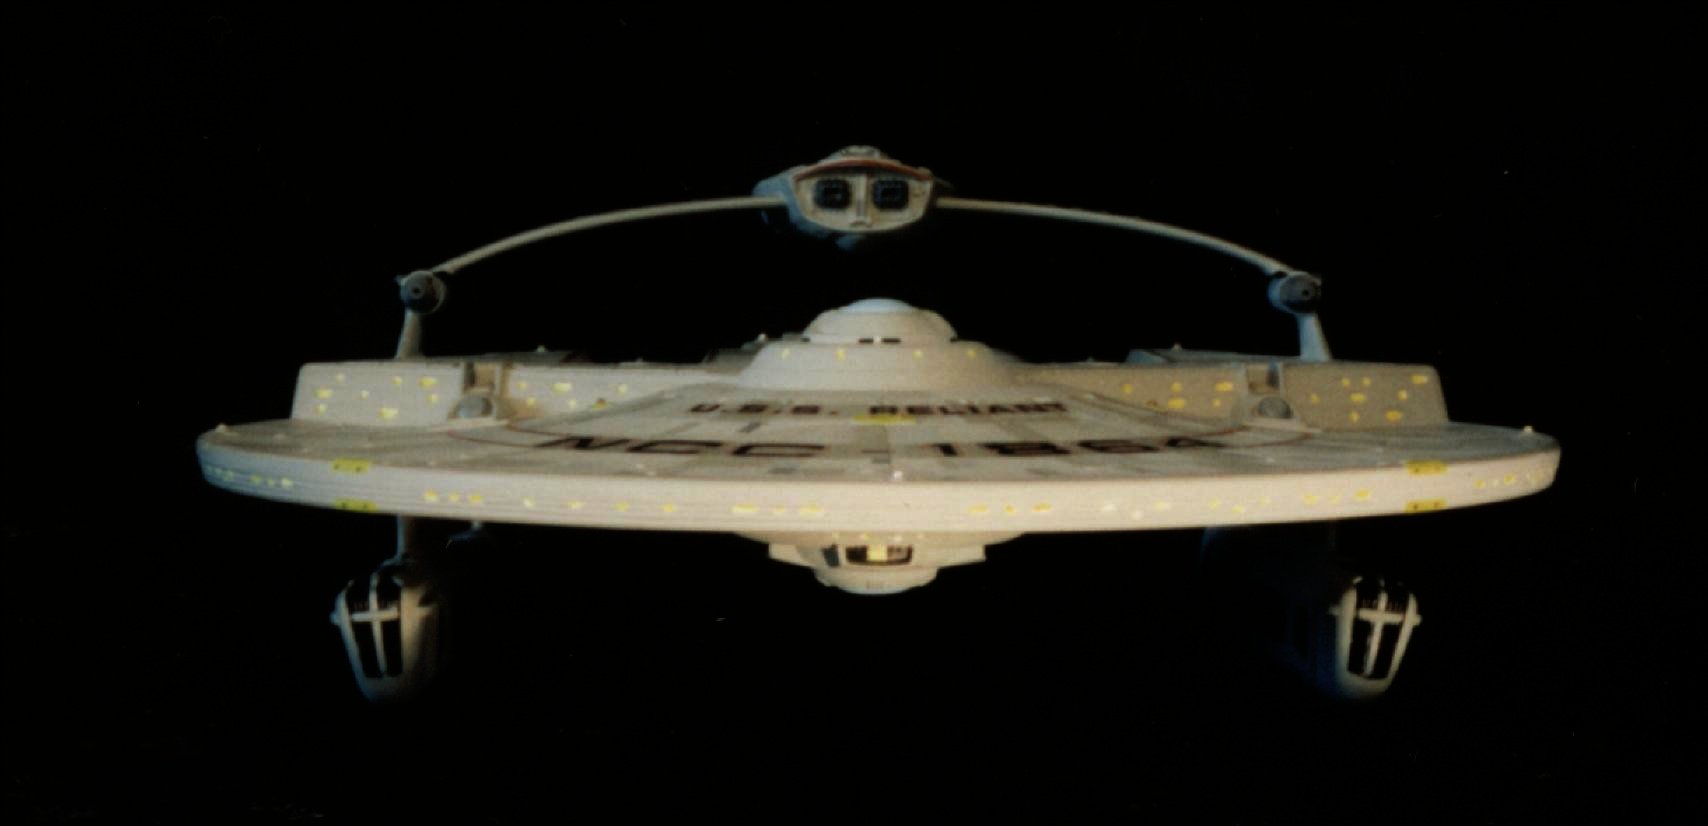 STAR TREK Reliant spacecraft model 